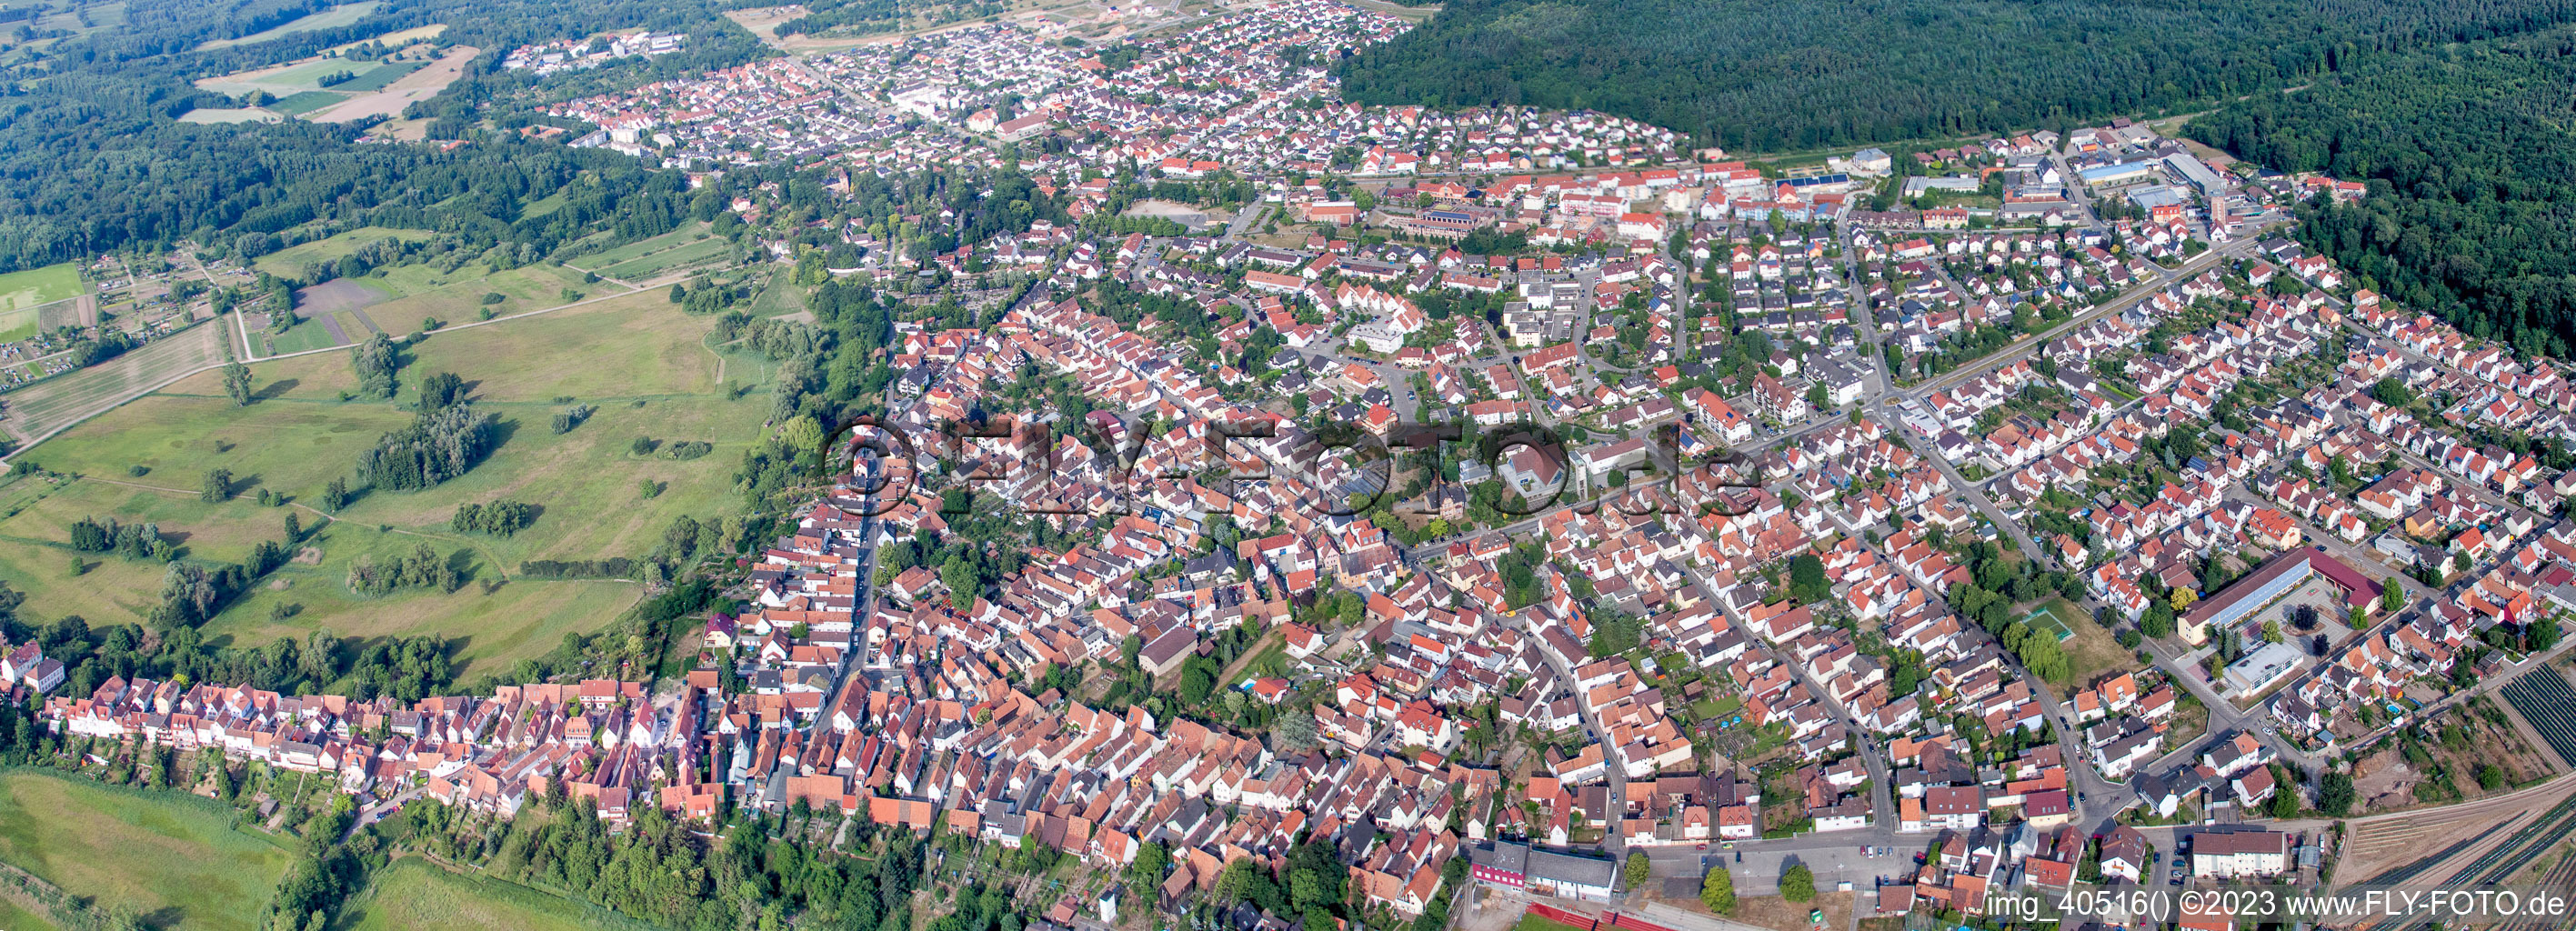 Jockgrim dans le département Rhénanie-Palatinat, Allemagne vue du ciel